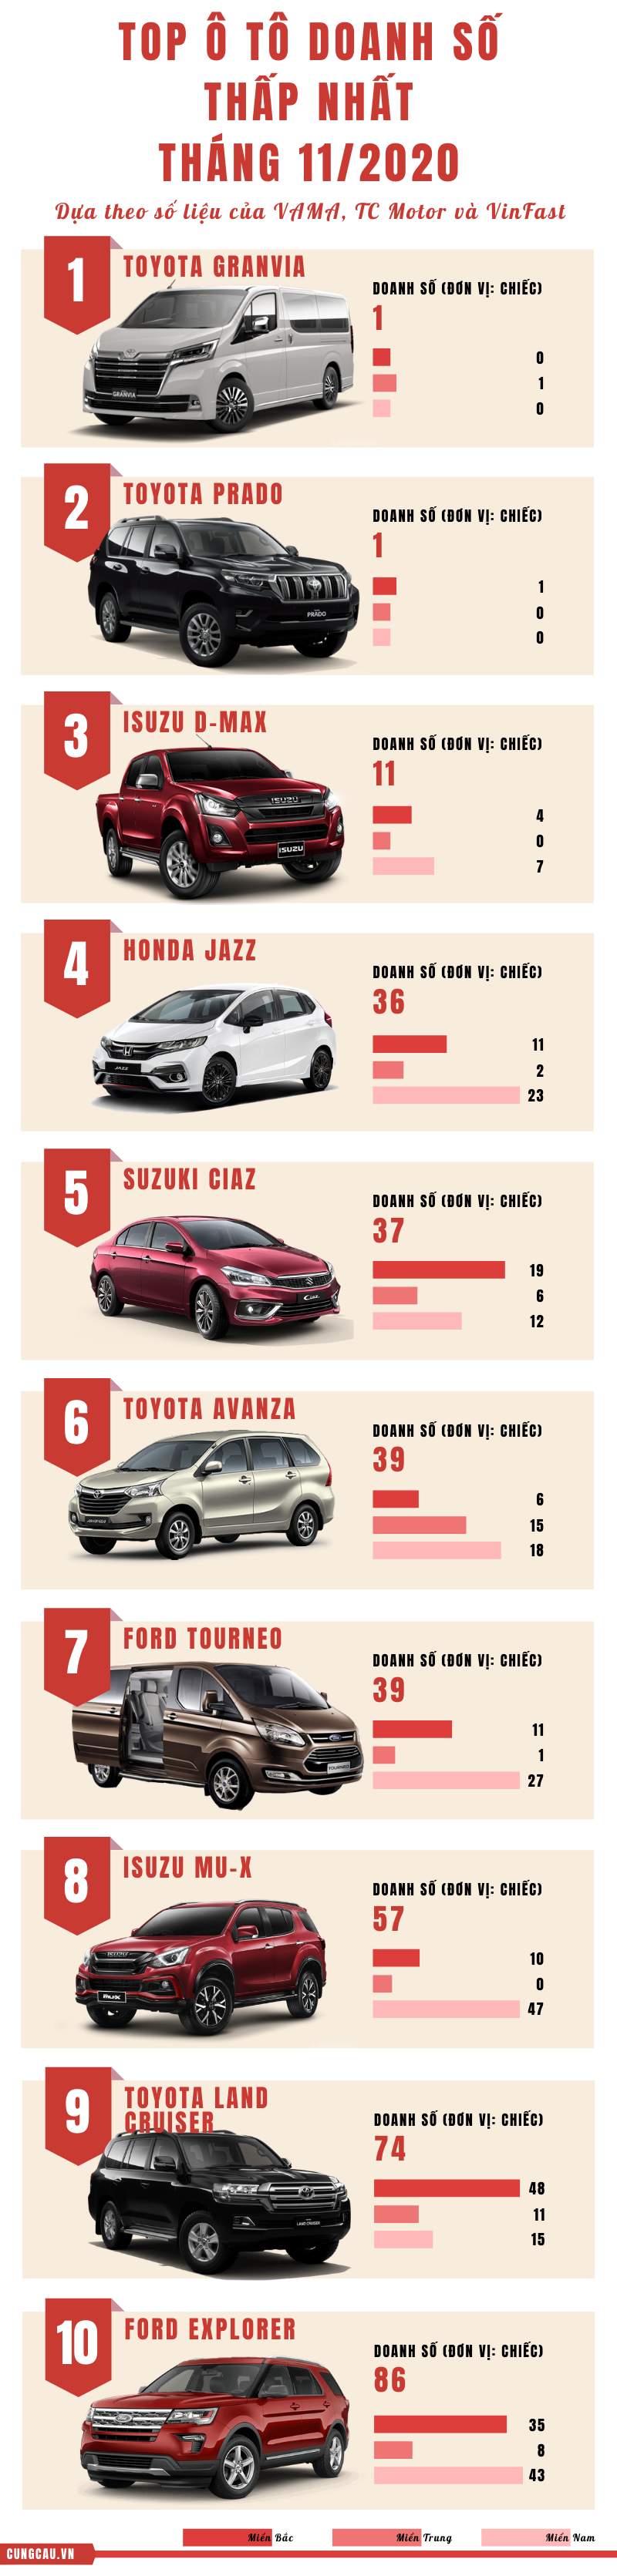 Toyota Land Cruiser có doanh số không tốt tại thị trường Việt Nam, đây clà dòng SUV hạng sang, kén khách hàng.